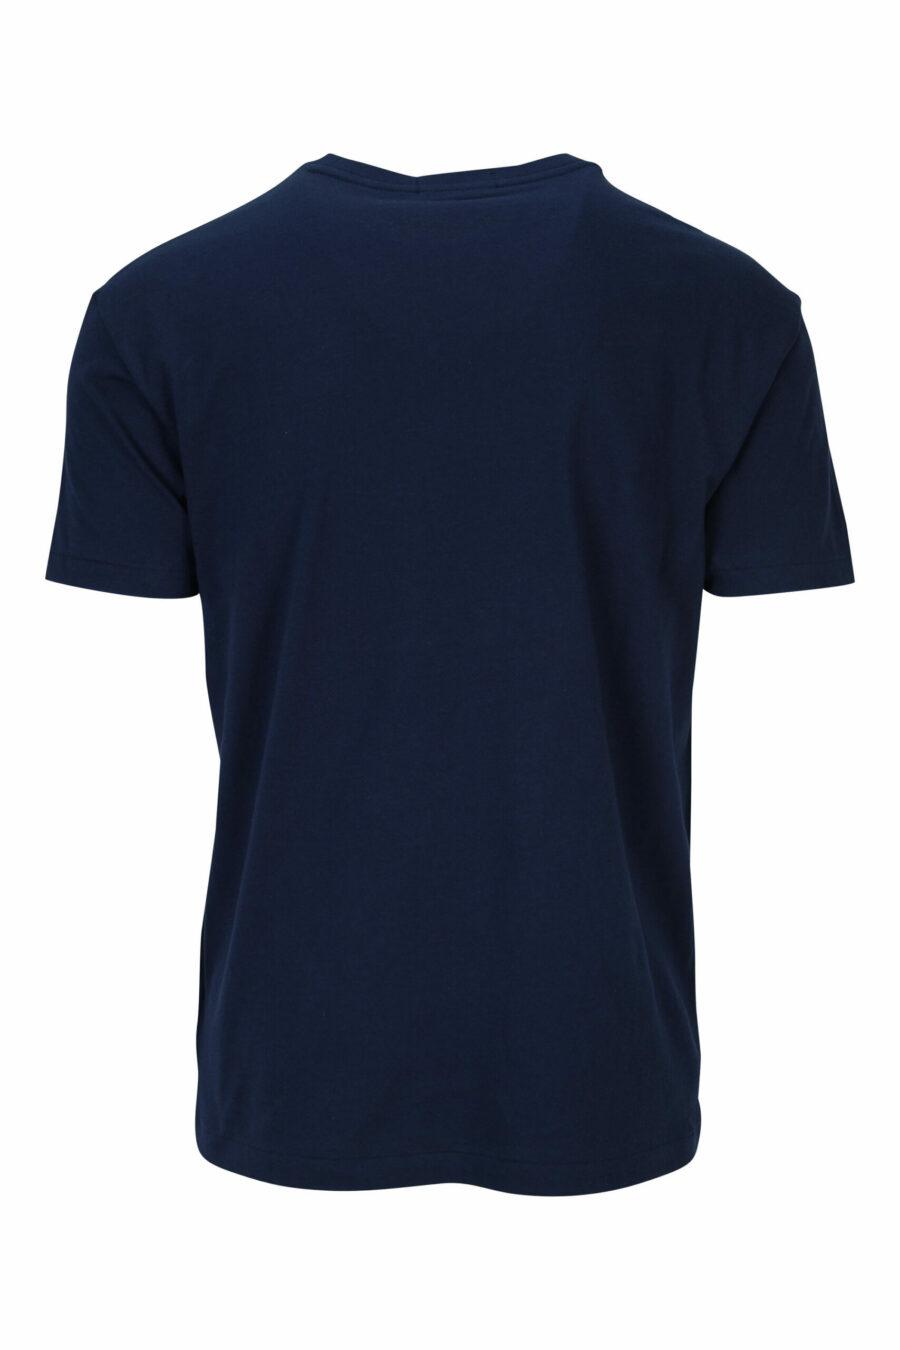 T-shirt bleu foncé avec maxilogo "polo" blanc - 3616535909311 1 à l'échelle